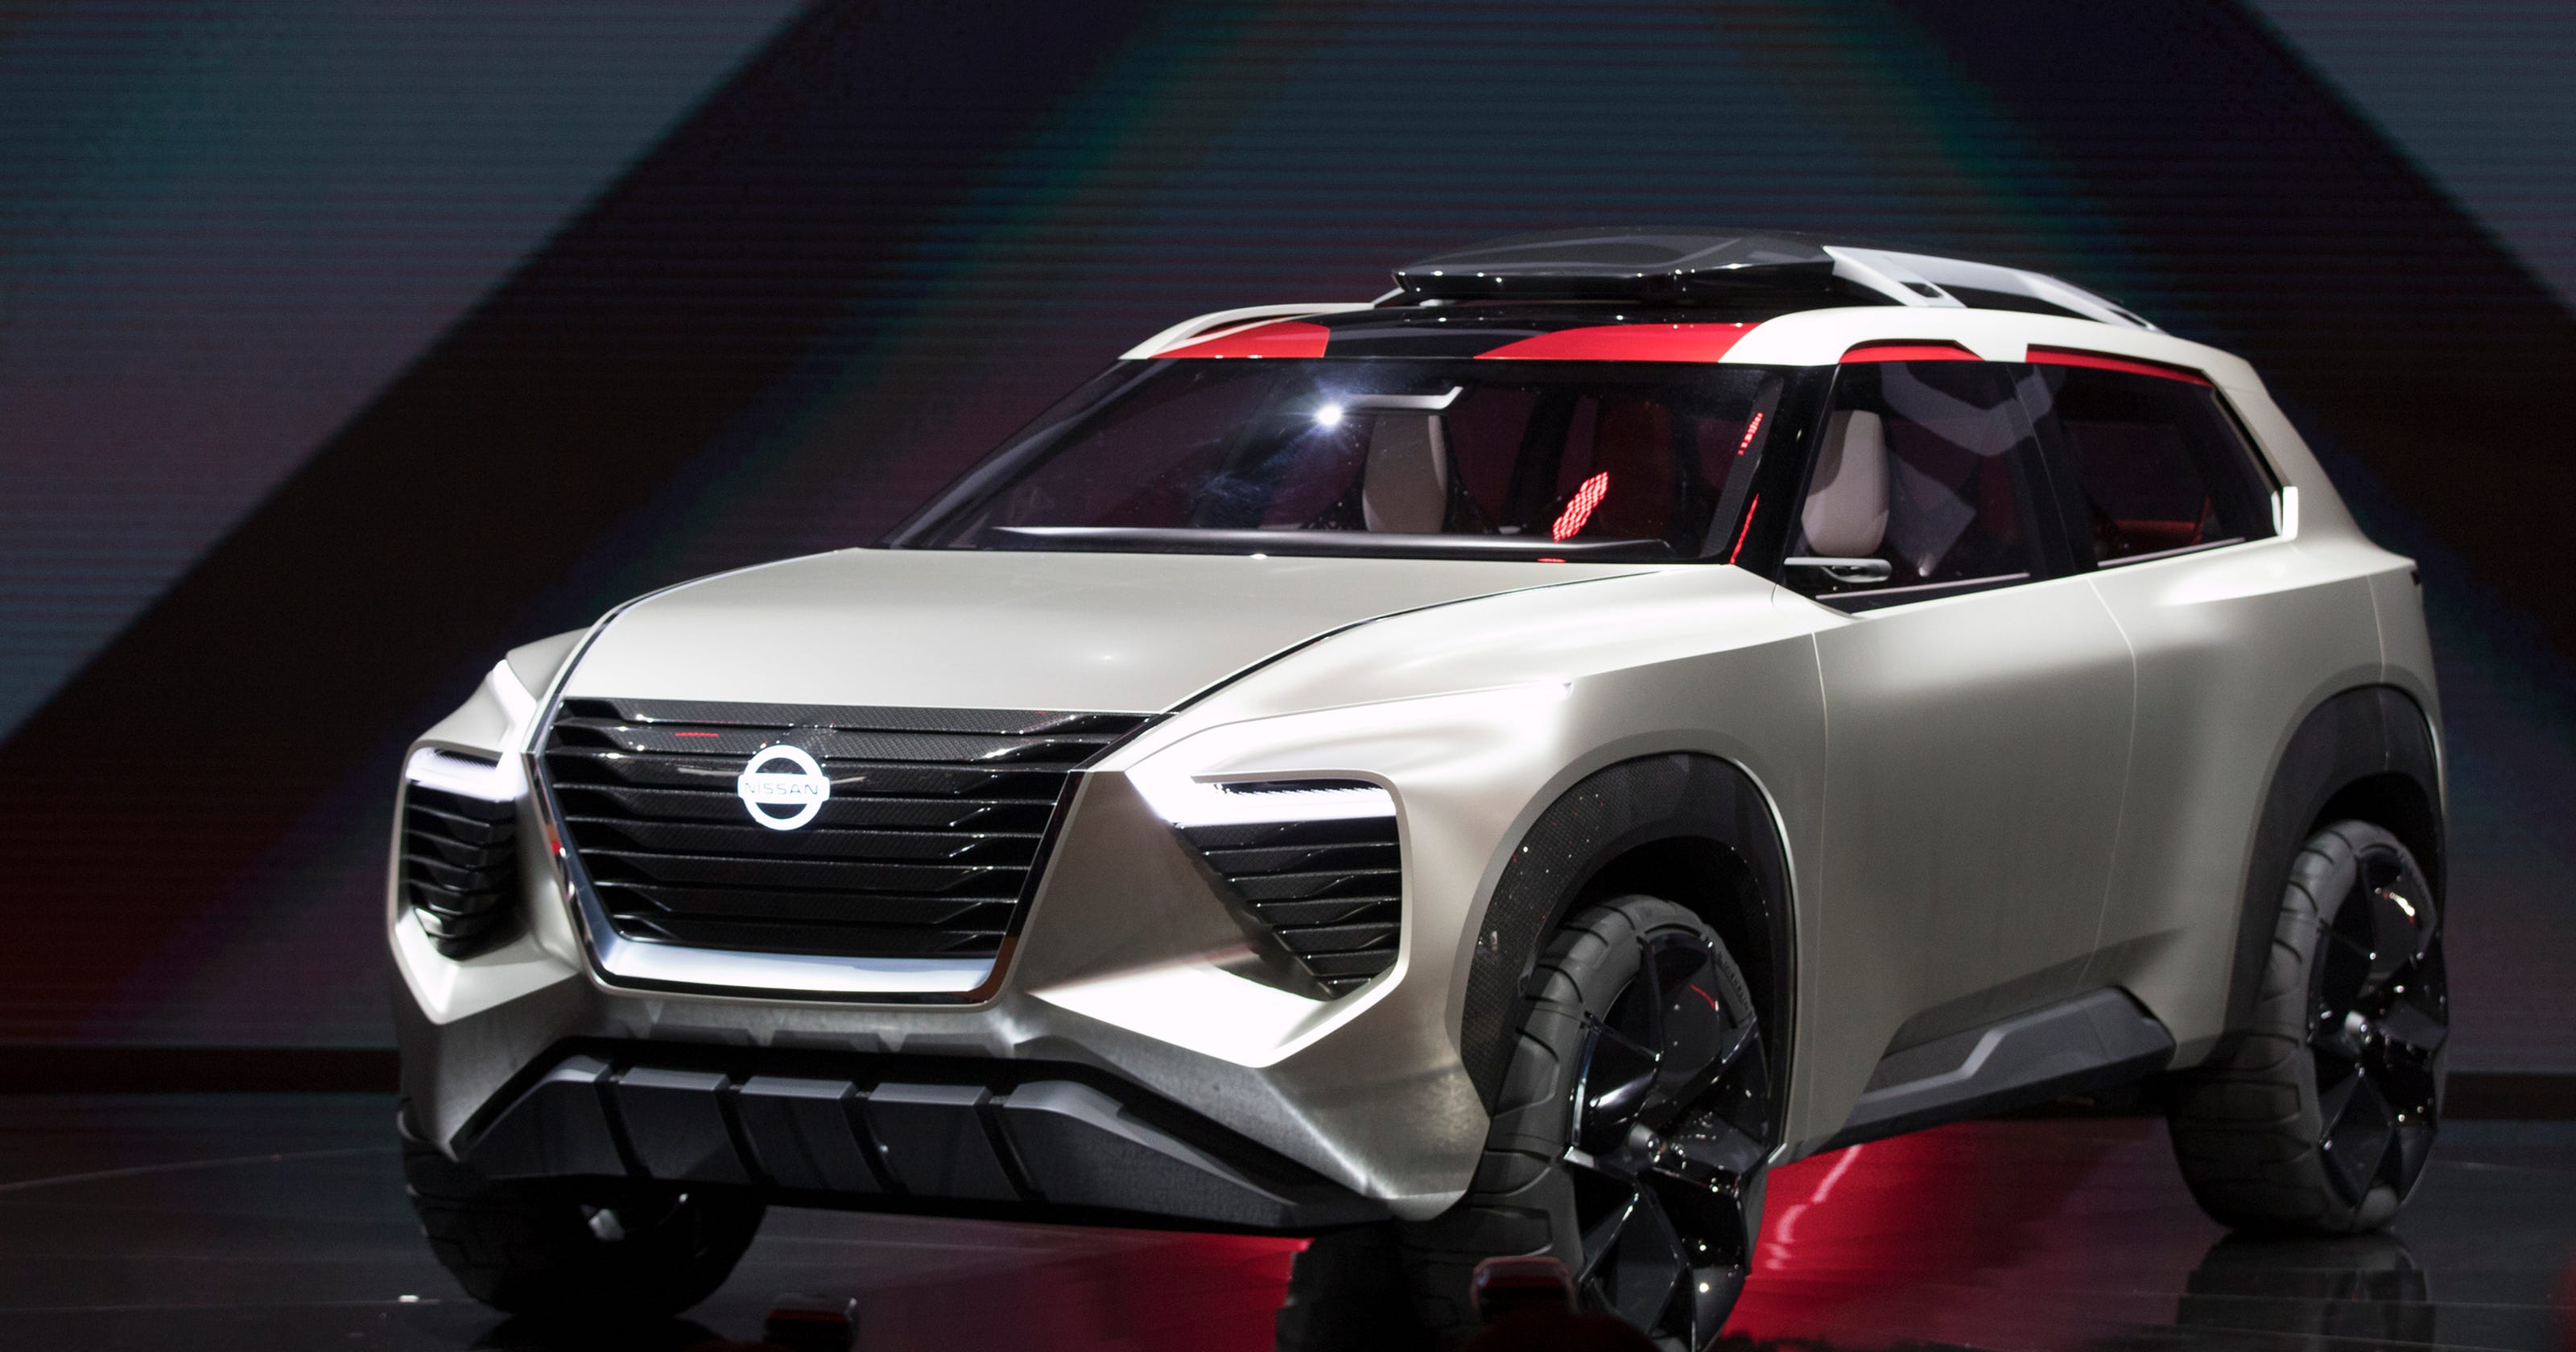 Nissan Xmotion SUV concept unveiled at Detroit Auto Show